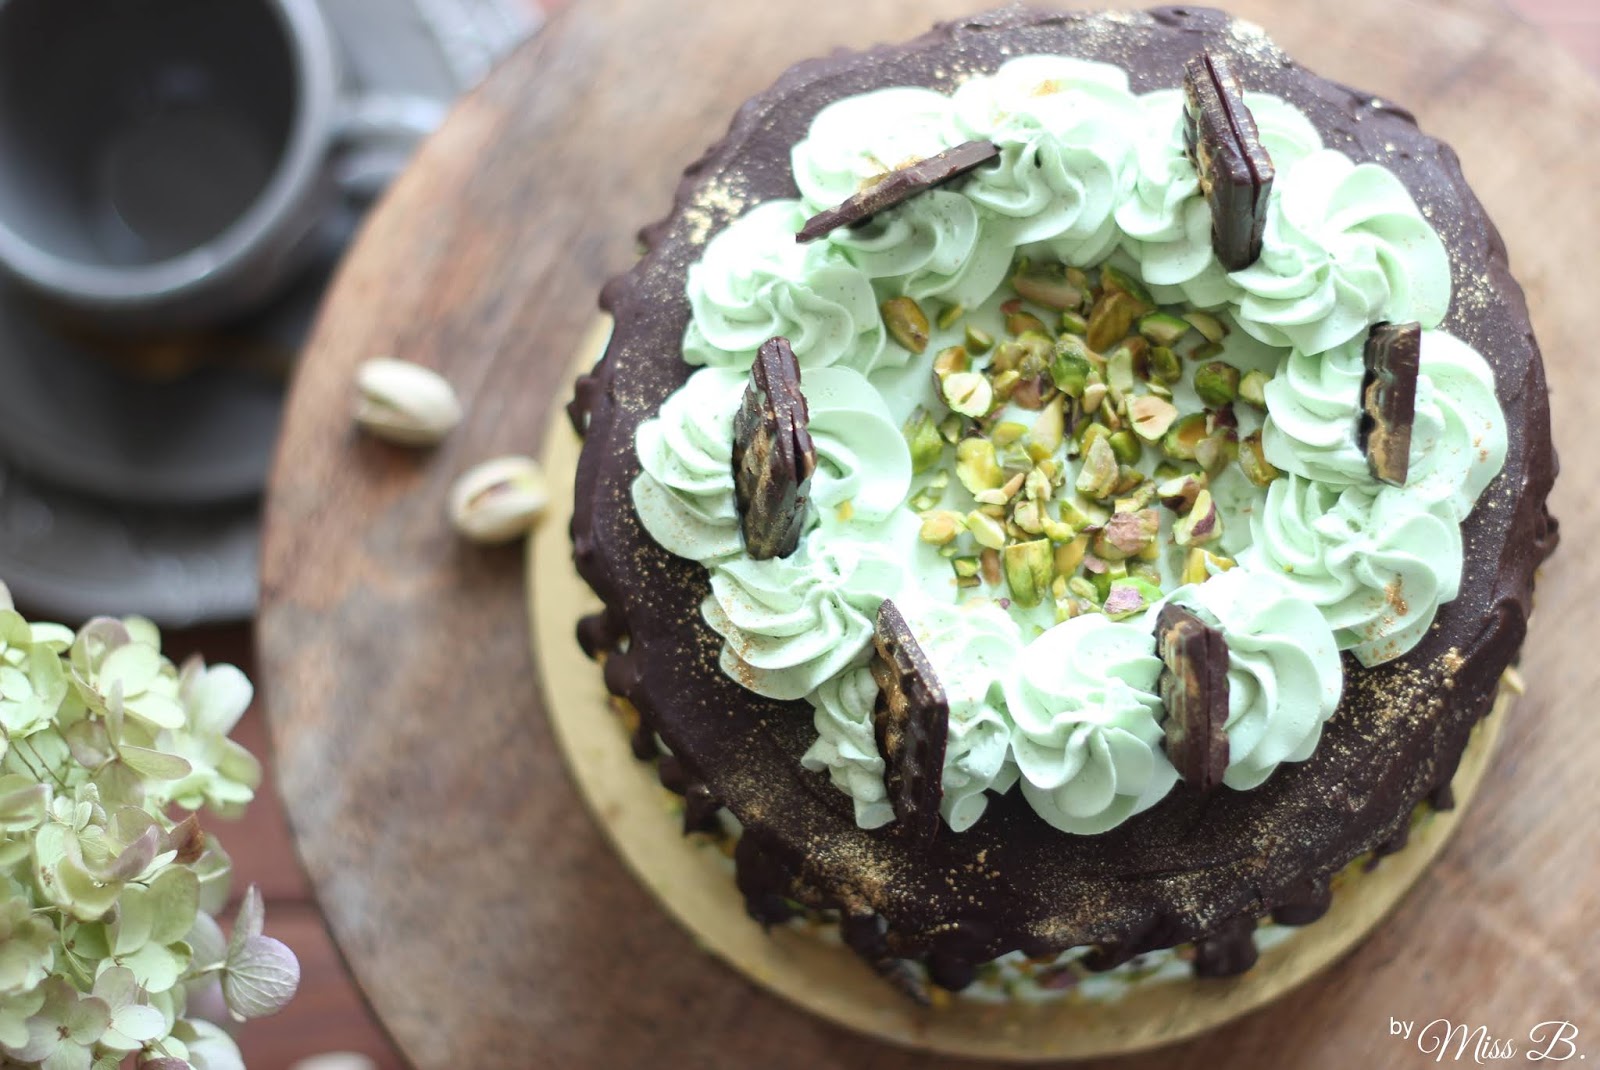 Schön dekadent: Schokoladen-Pistazien Drip Cake